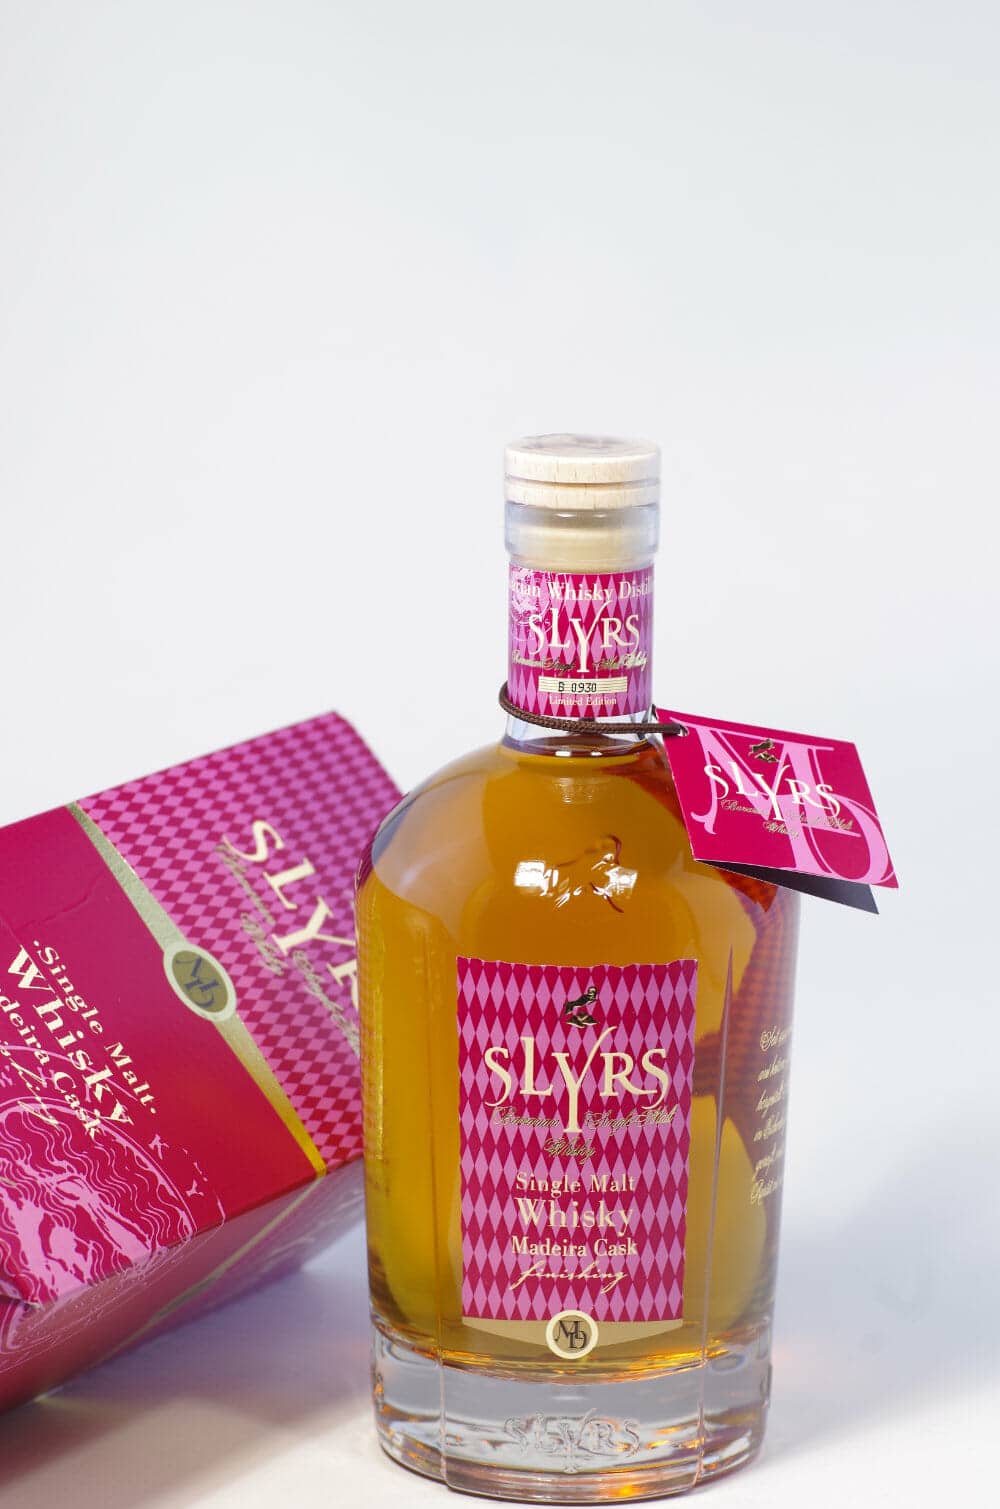 Slyrs Single Malt Whisky Madeira Cask Bild